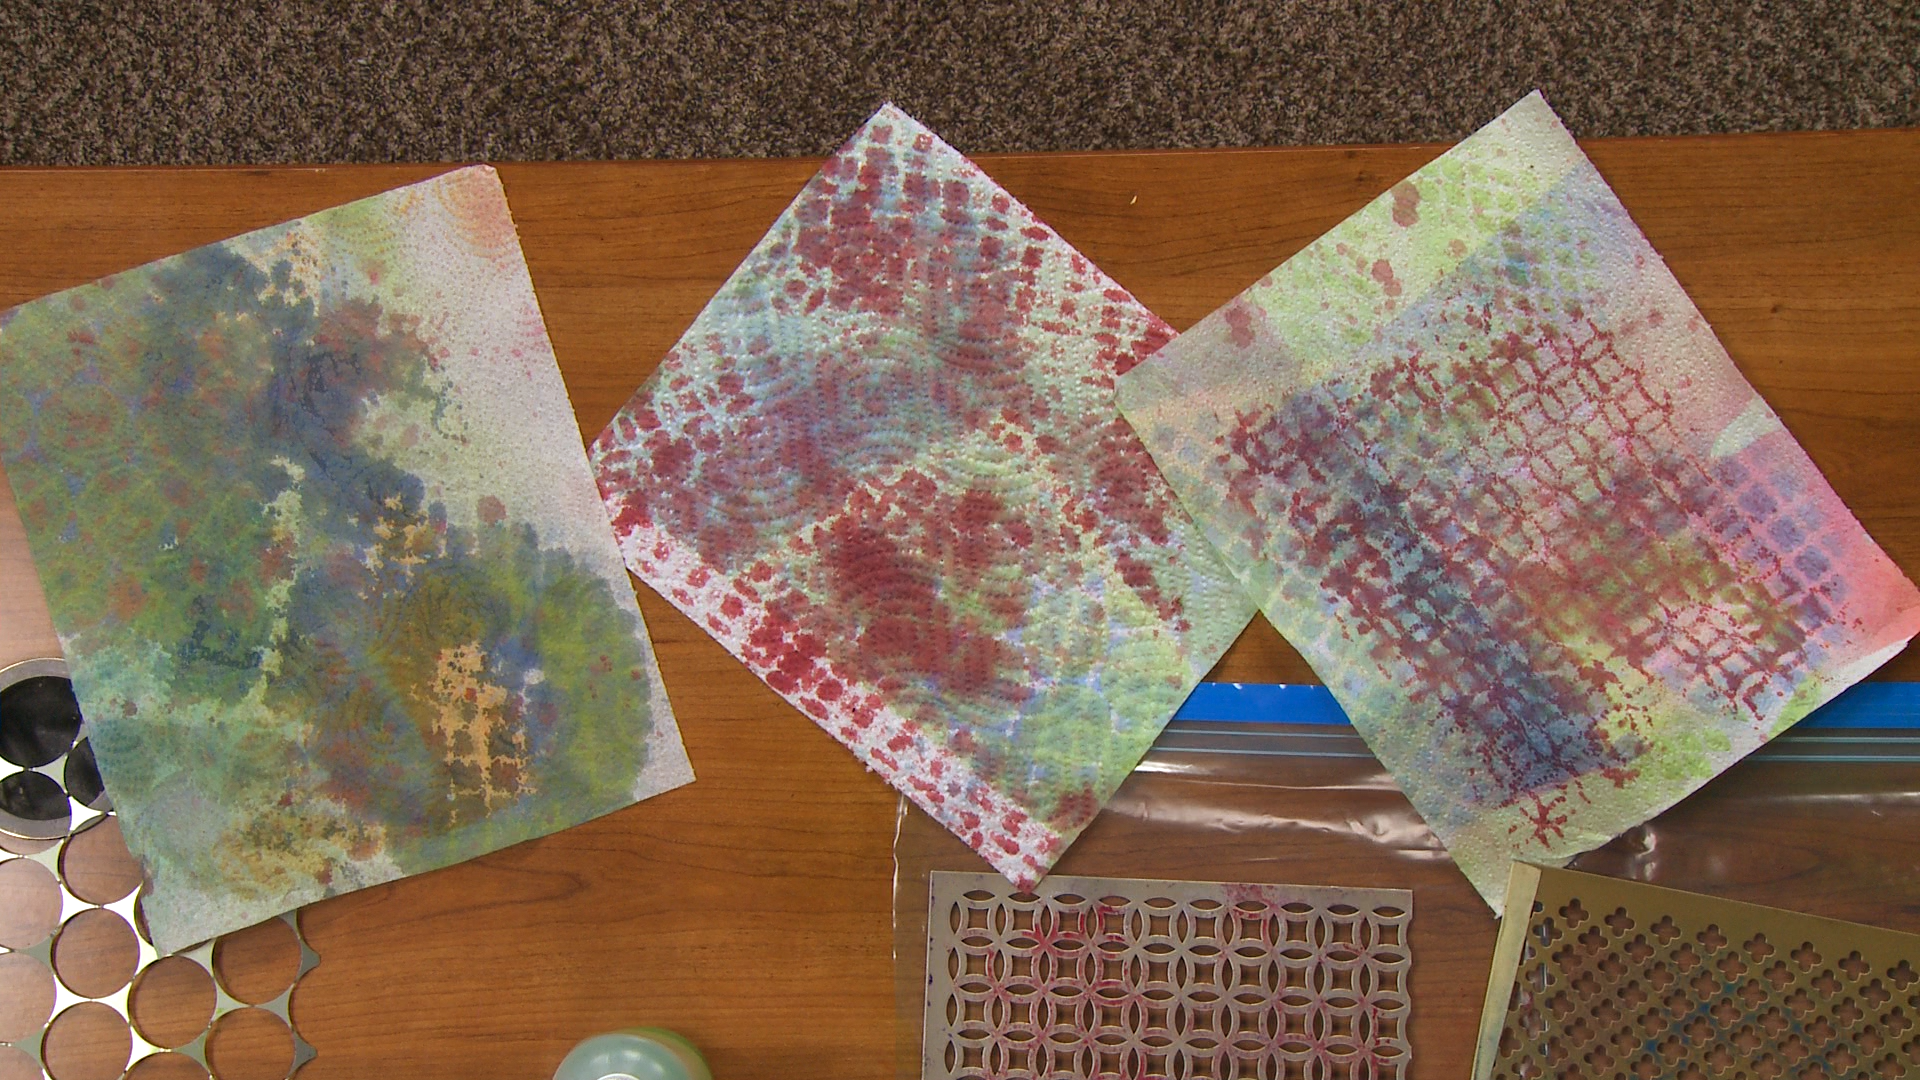 Colorful paper towel quilt